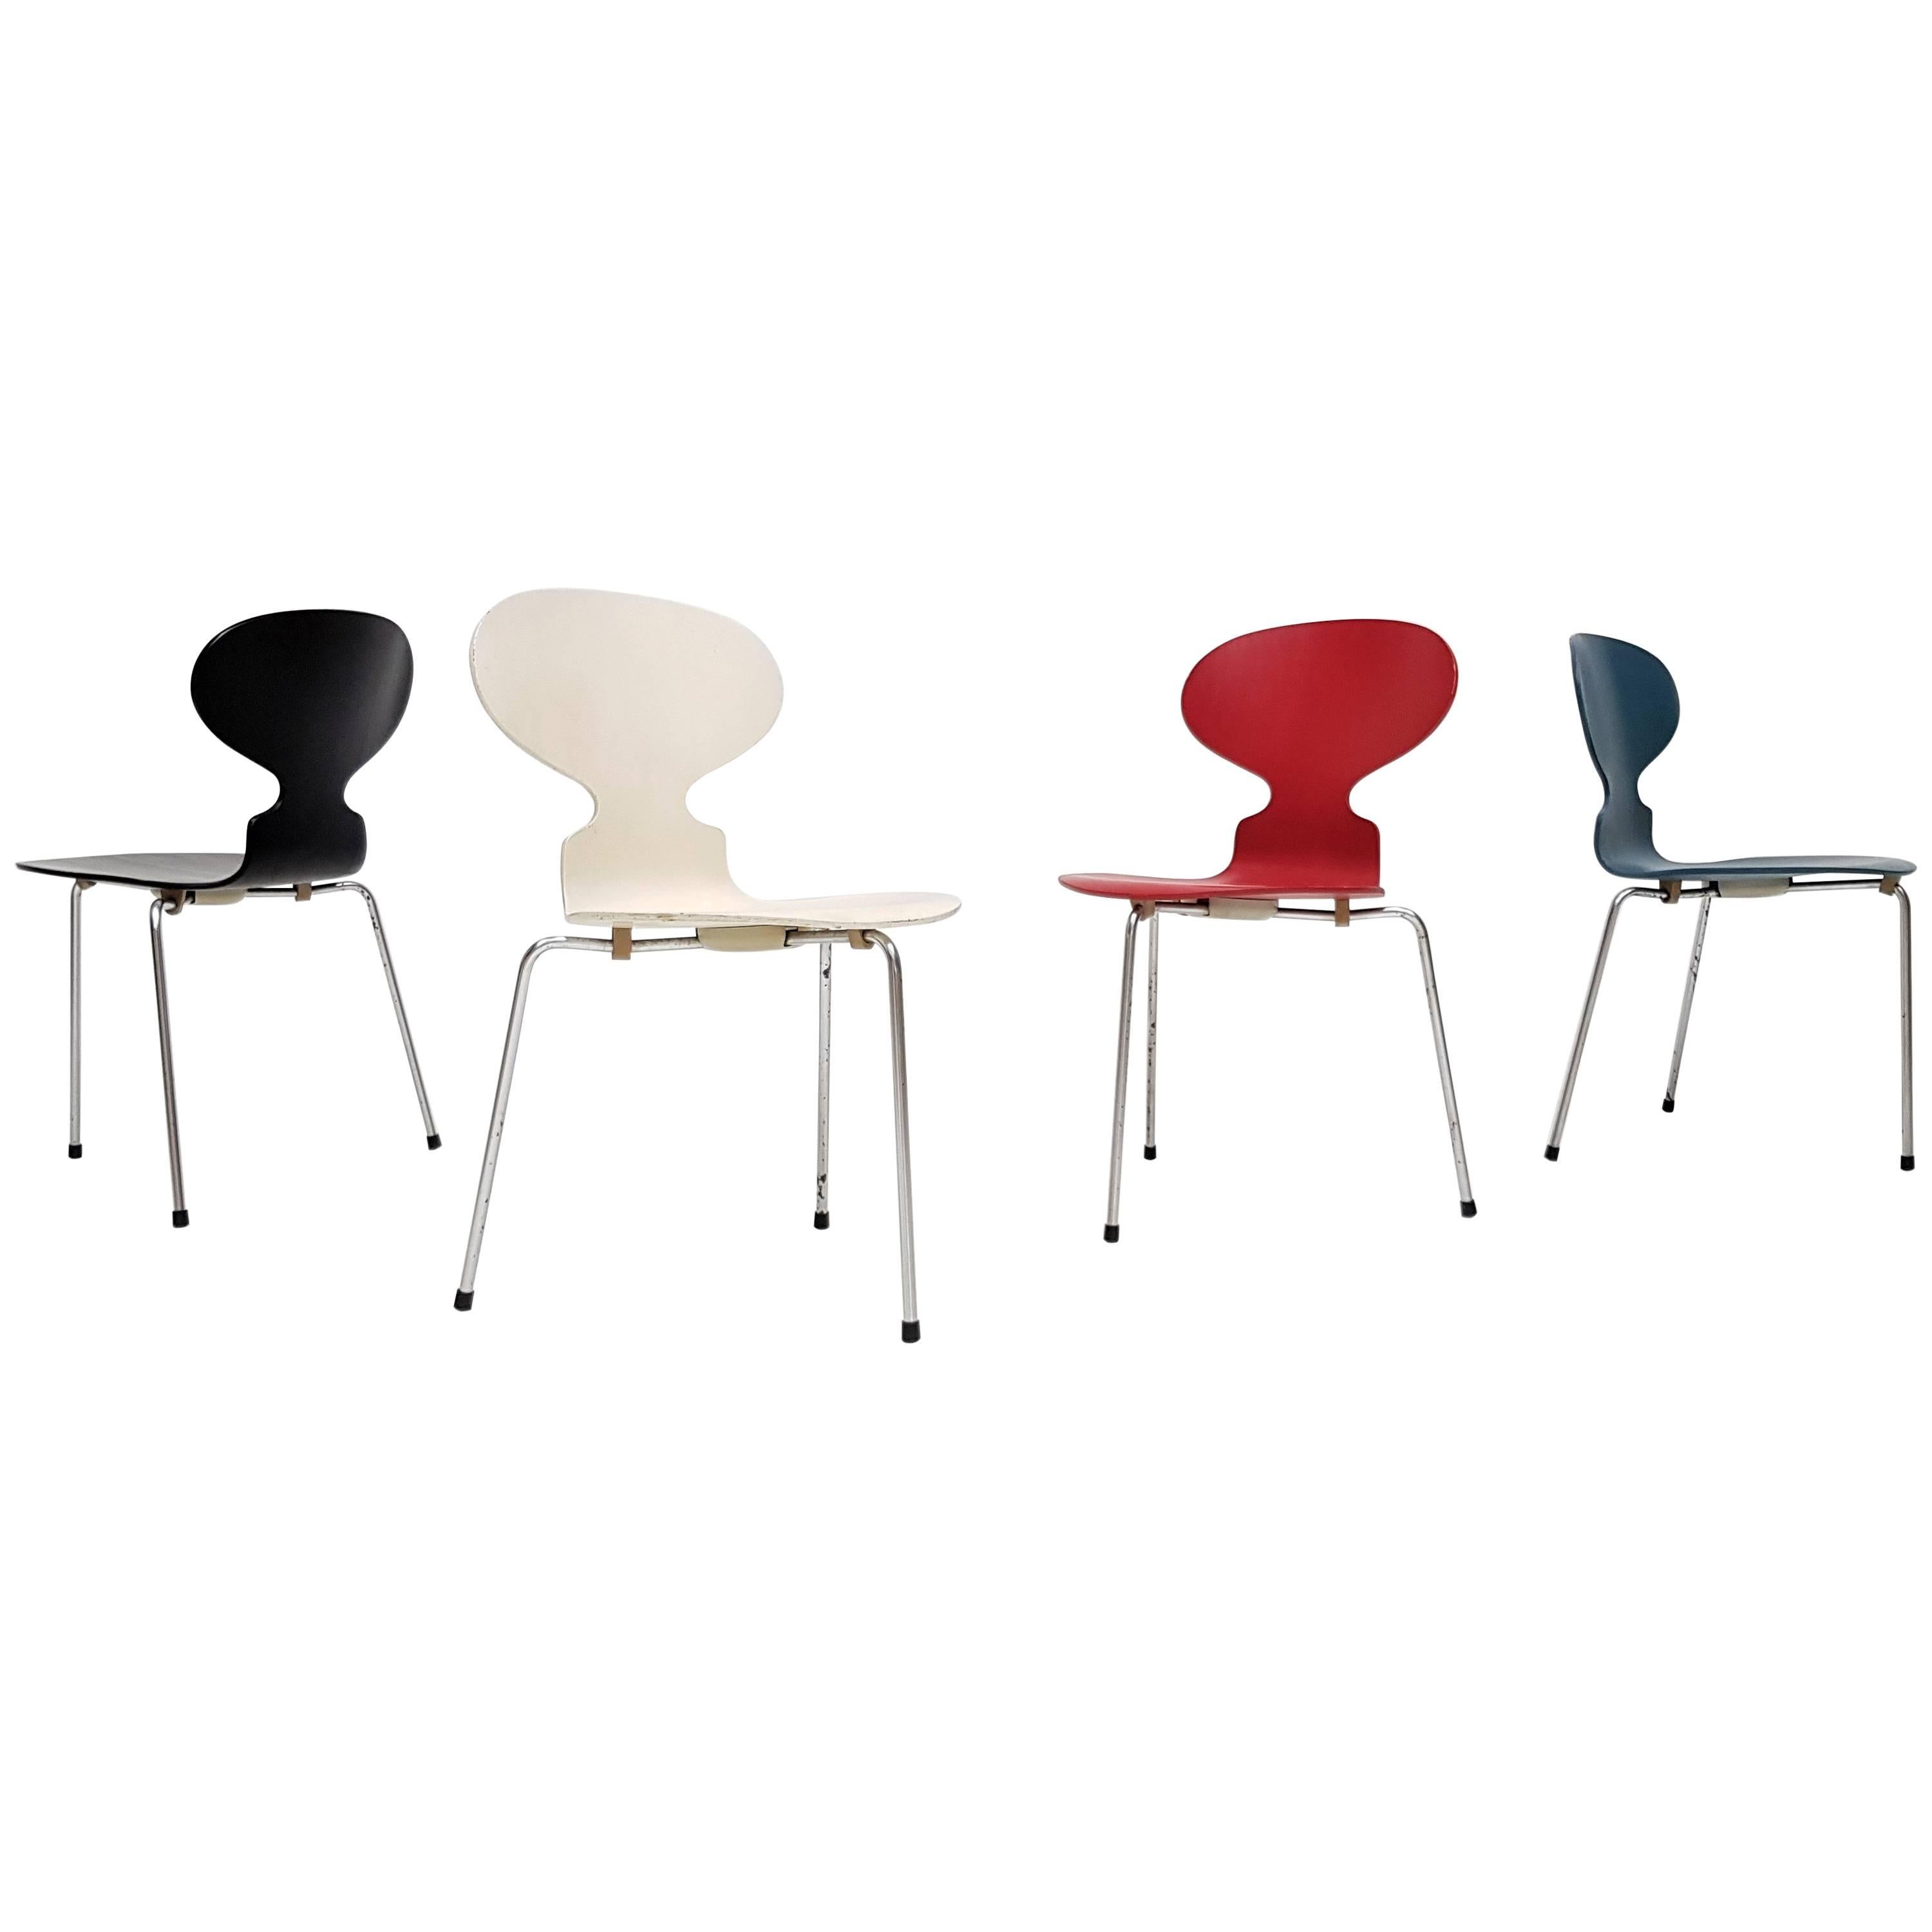 Model 3100 'Ant' Chairs by Arne Jacobsen for Fritz Hansen, Designed 1952